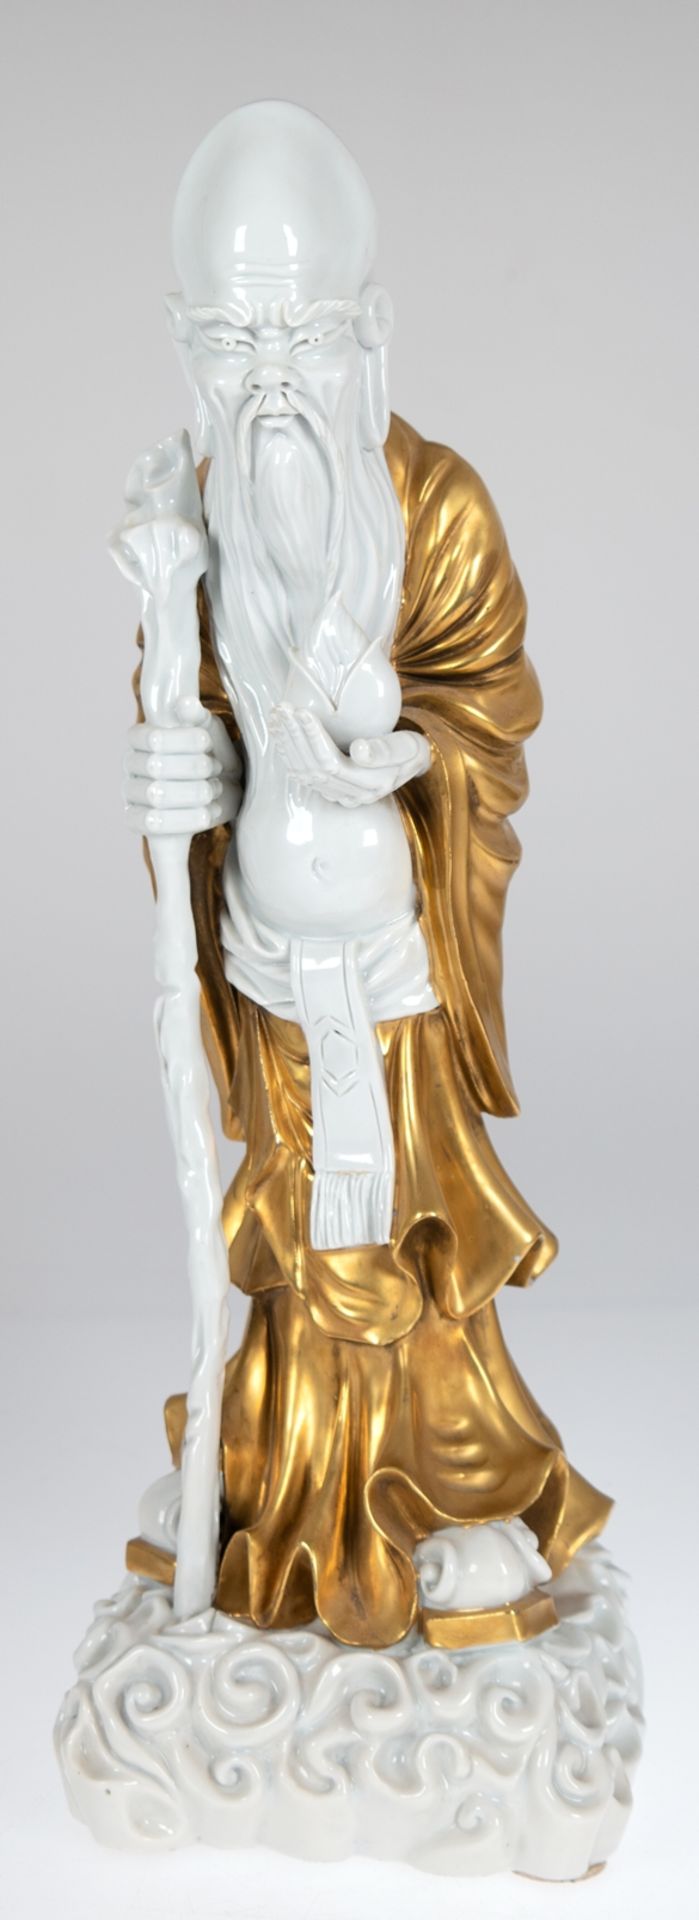 Porzellanfigur "Shoulao", China, Gott der Gesundheit und des langen Lebens, unterseitig Künstlersig